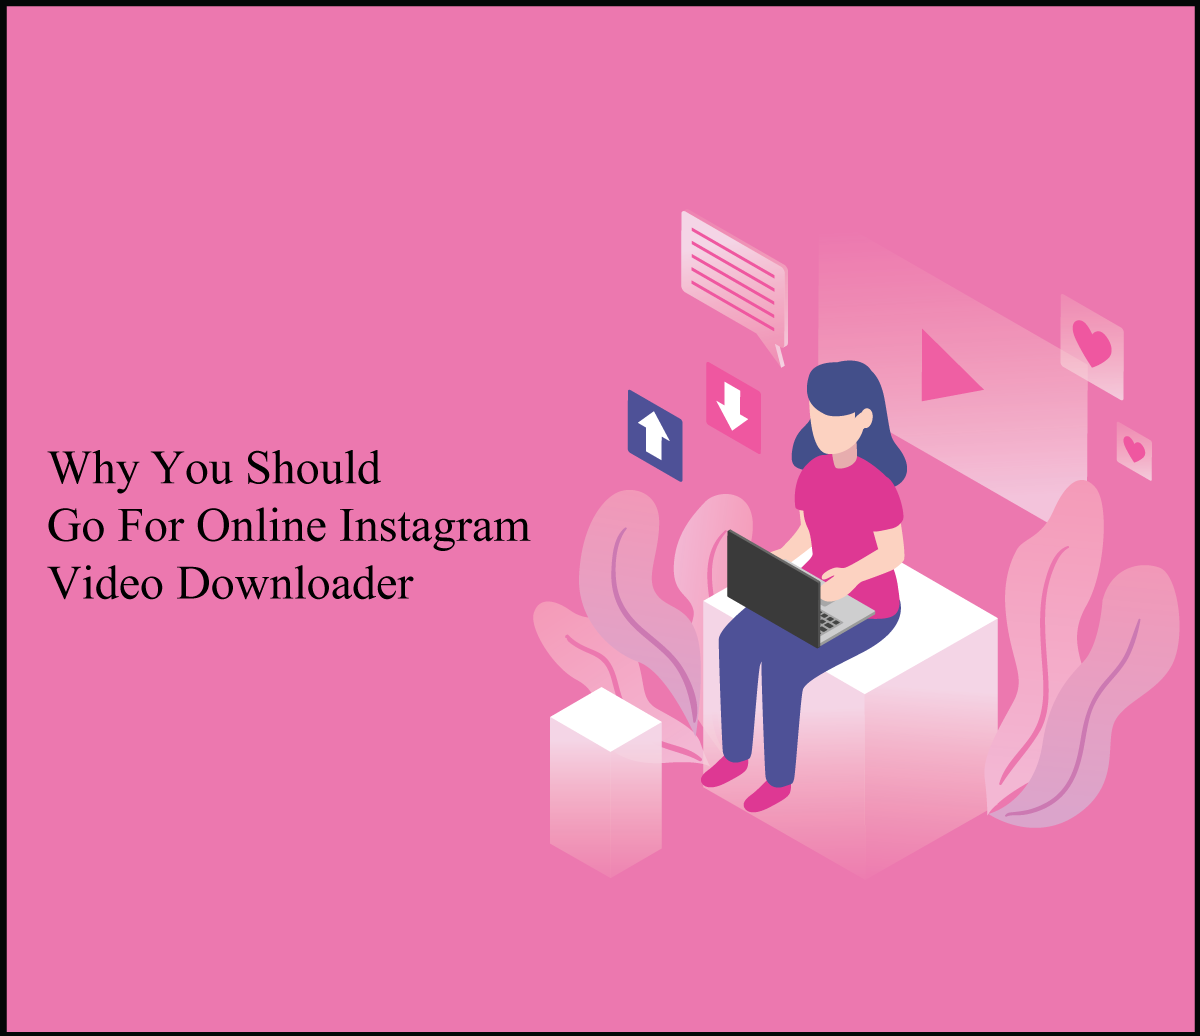 Why You Should Go For Online Instagram Video Downloader